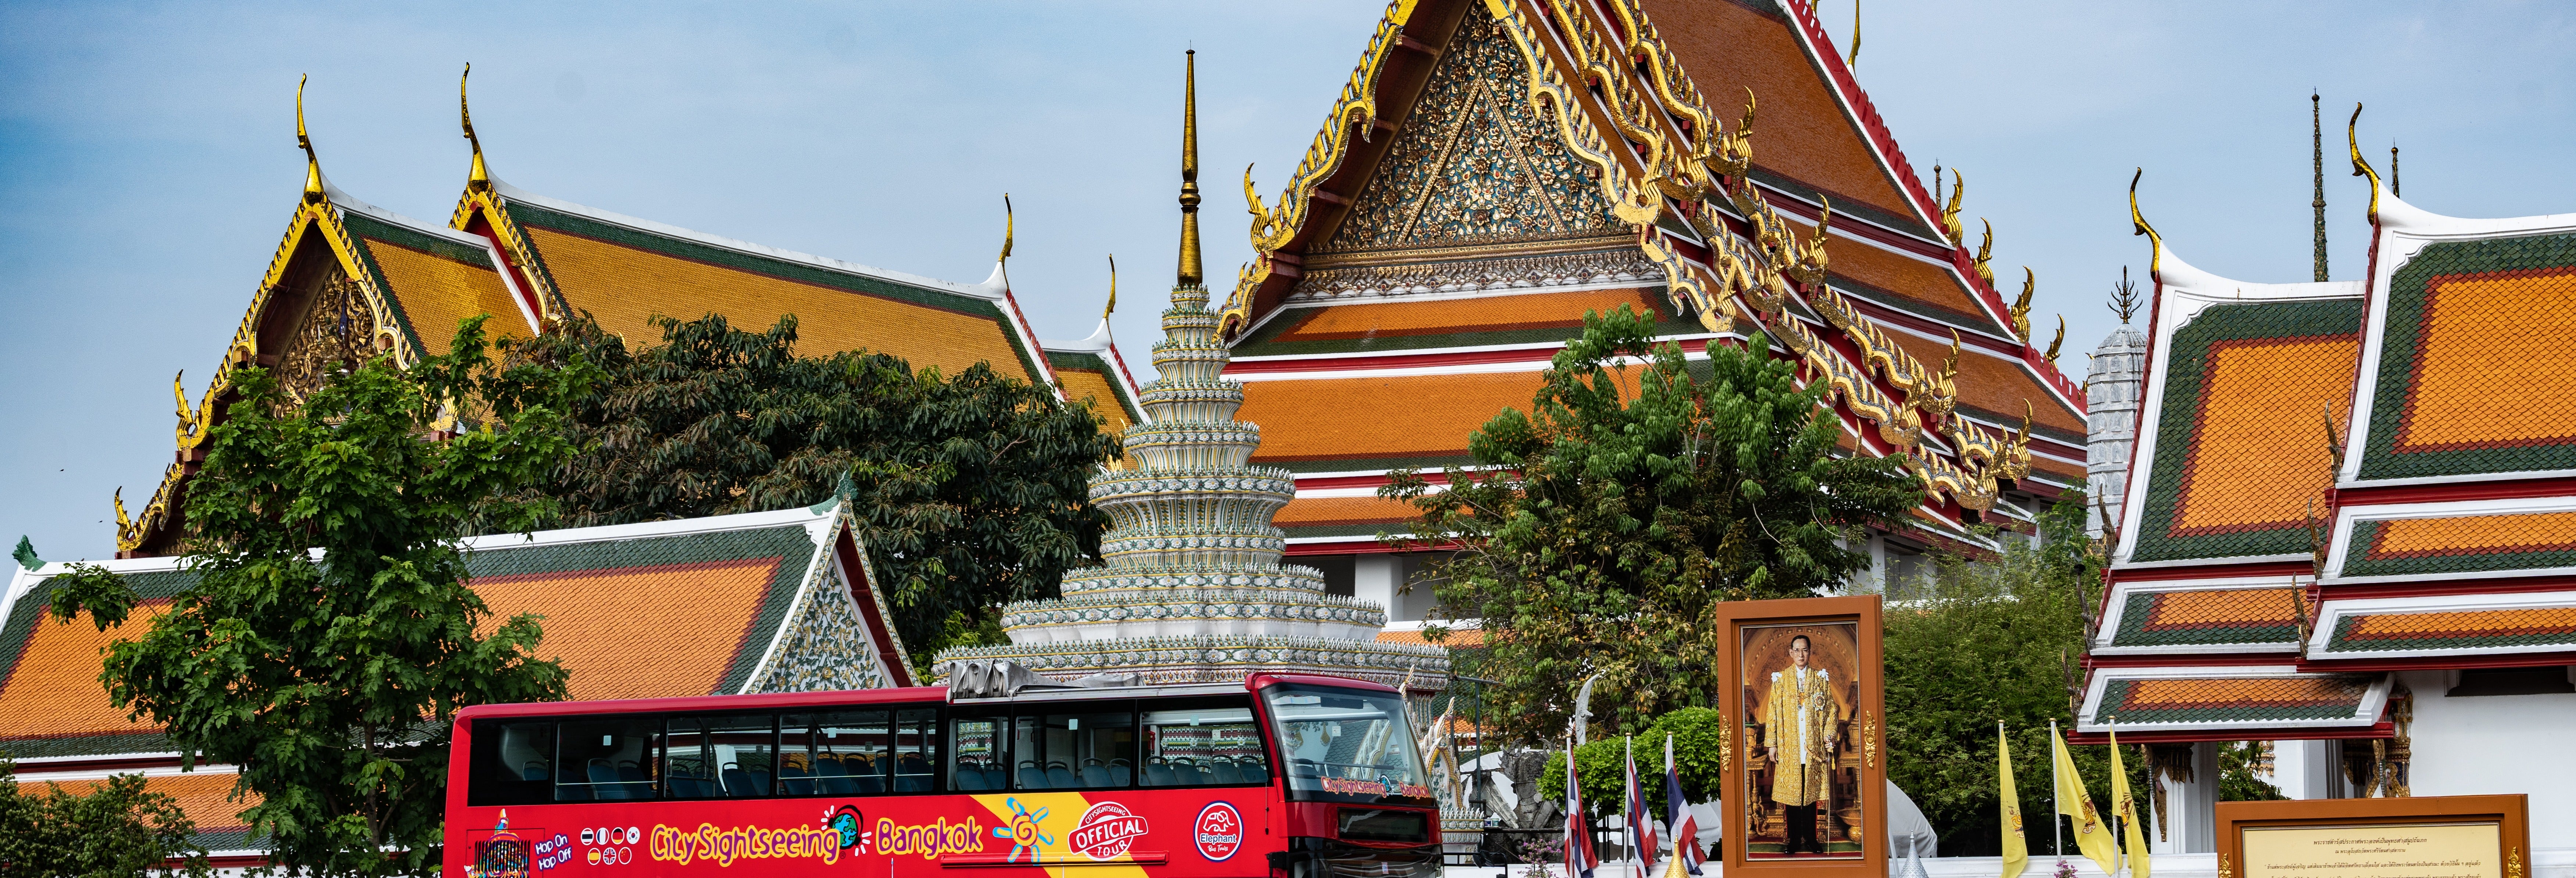 Ônibus turístico de Bangkok